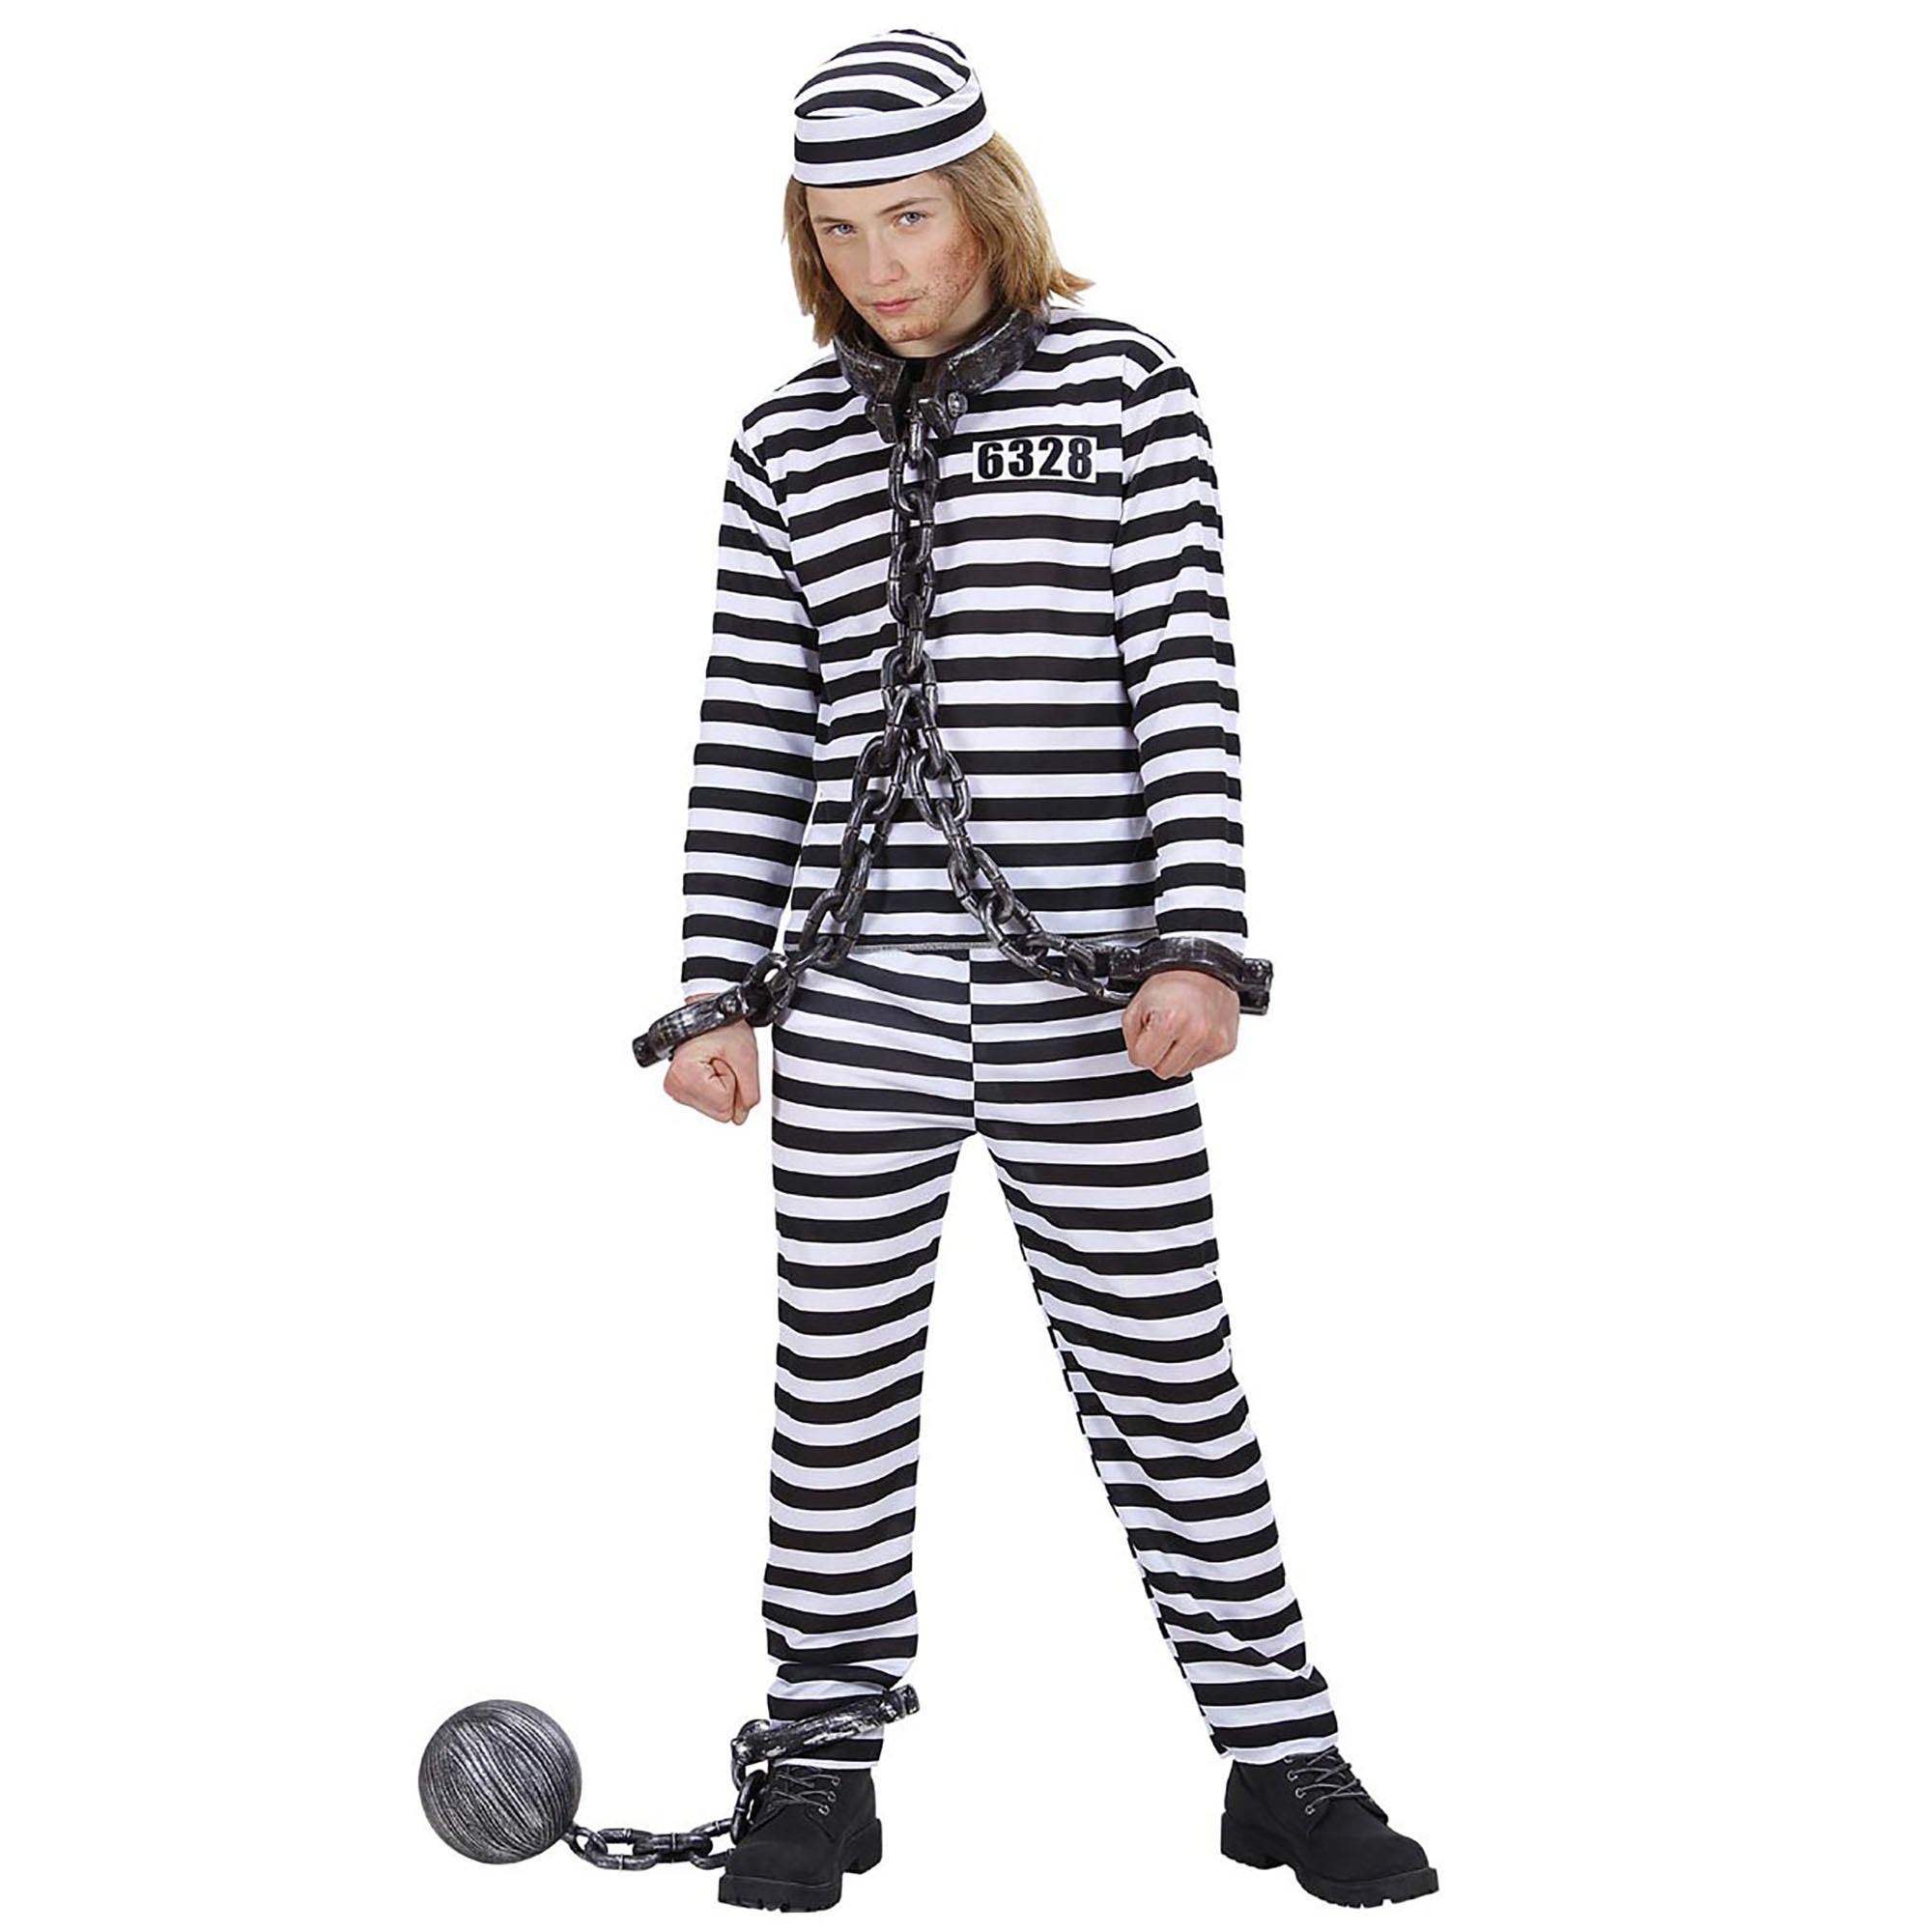 WIDMANN - Zwart en wit gevangene kostuum voor kinderen - 158 (11-13 jaar)